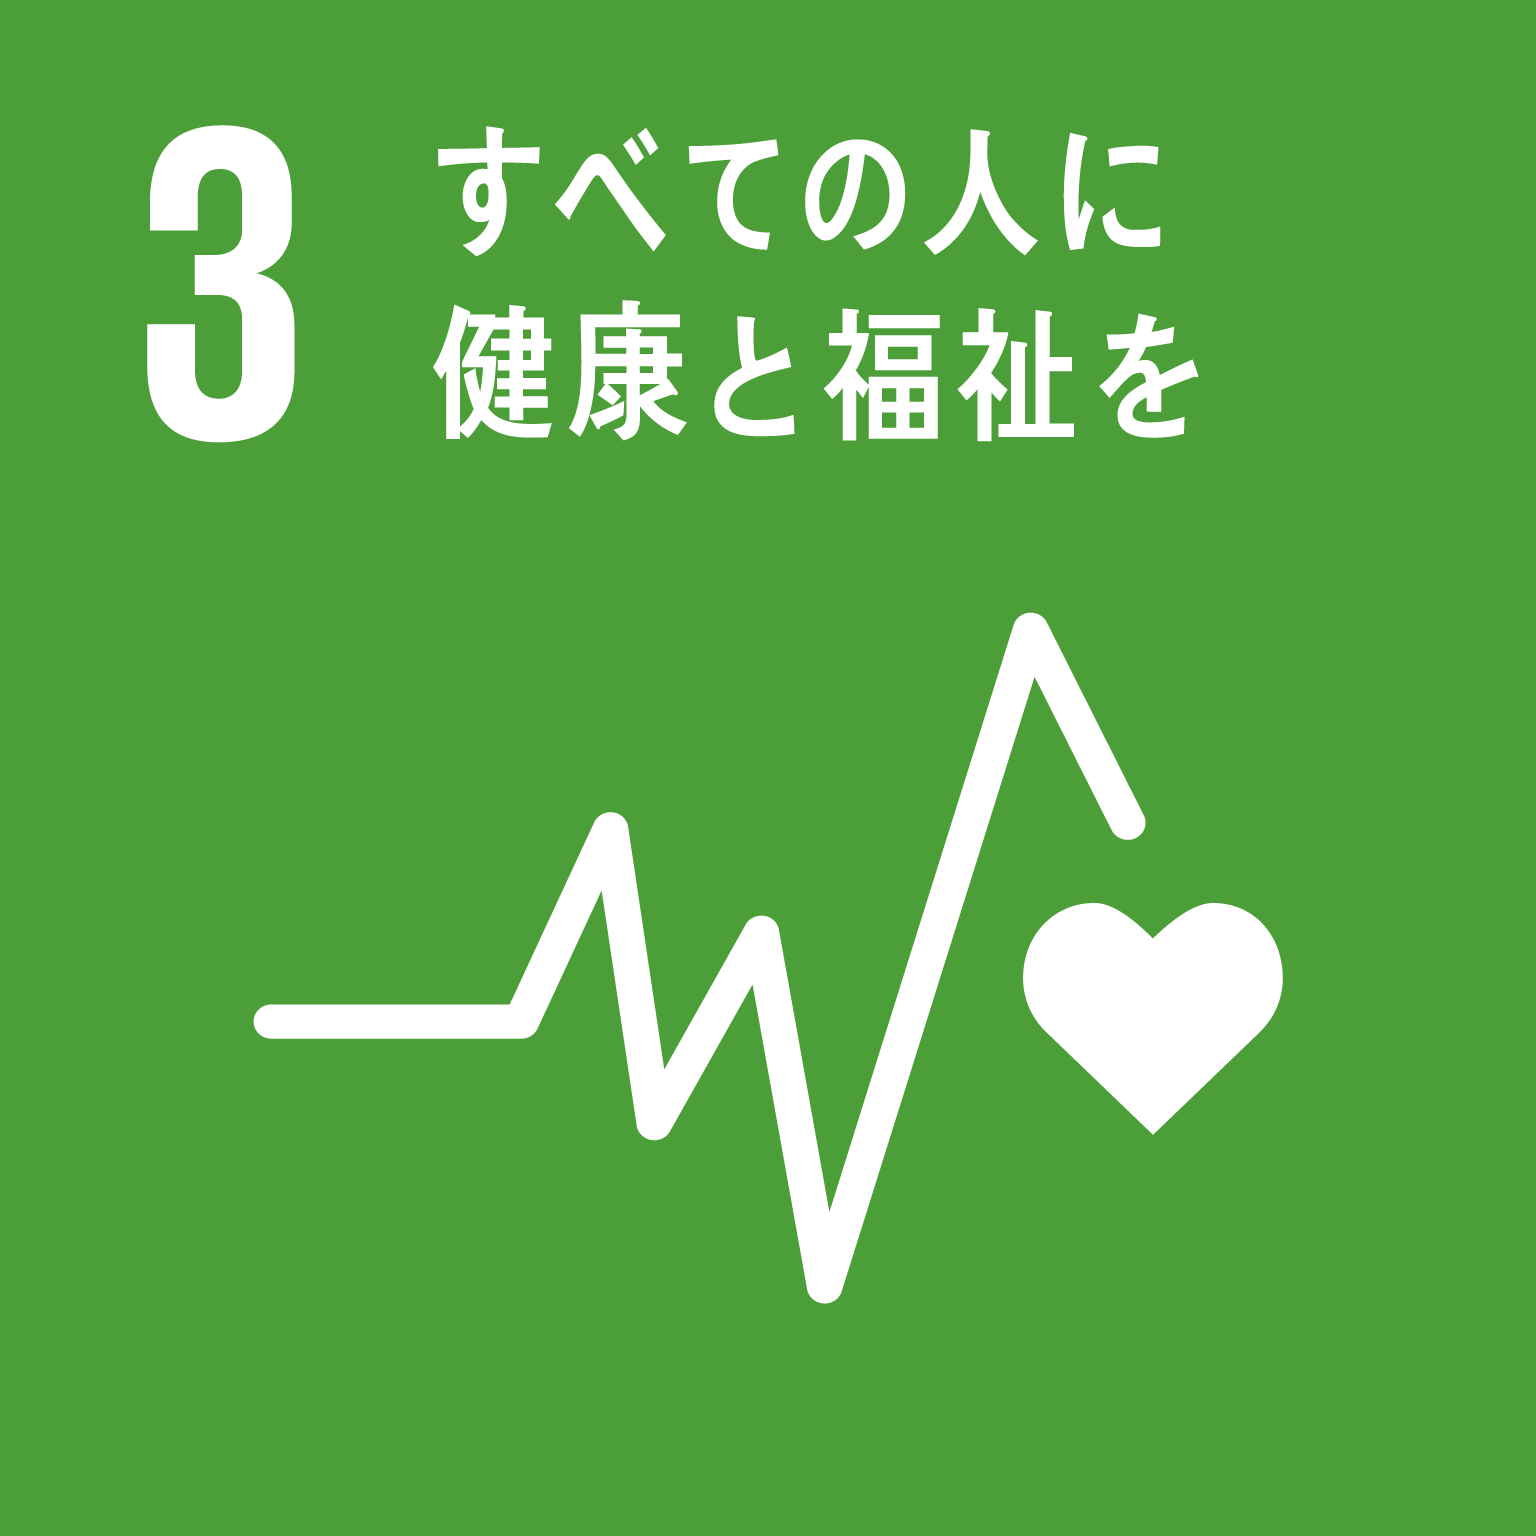 目標3すべての人に健康と福祉をのロゴ